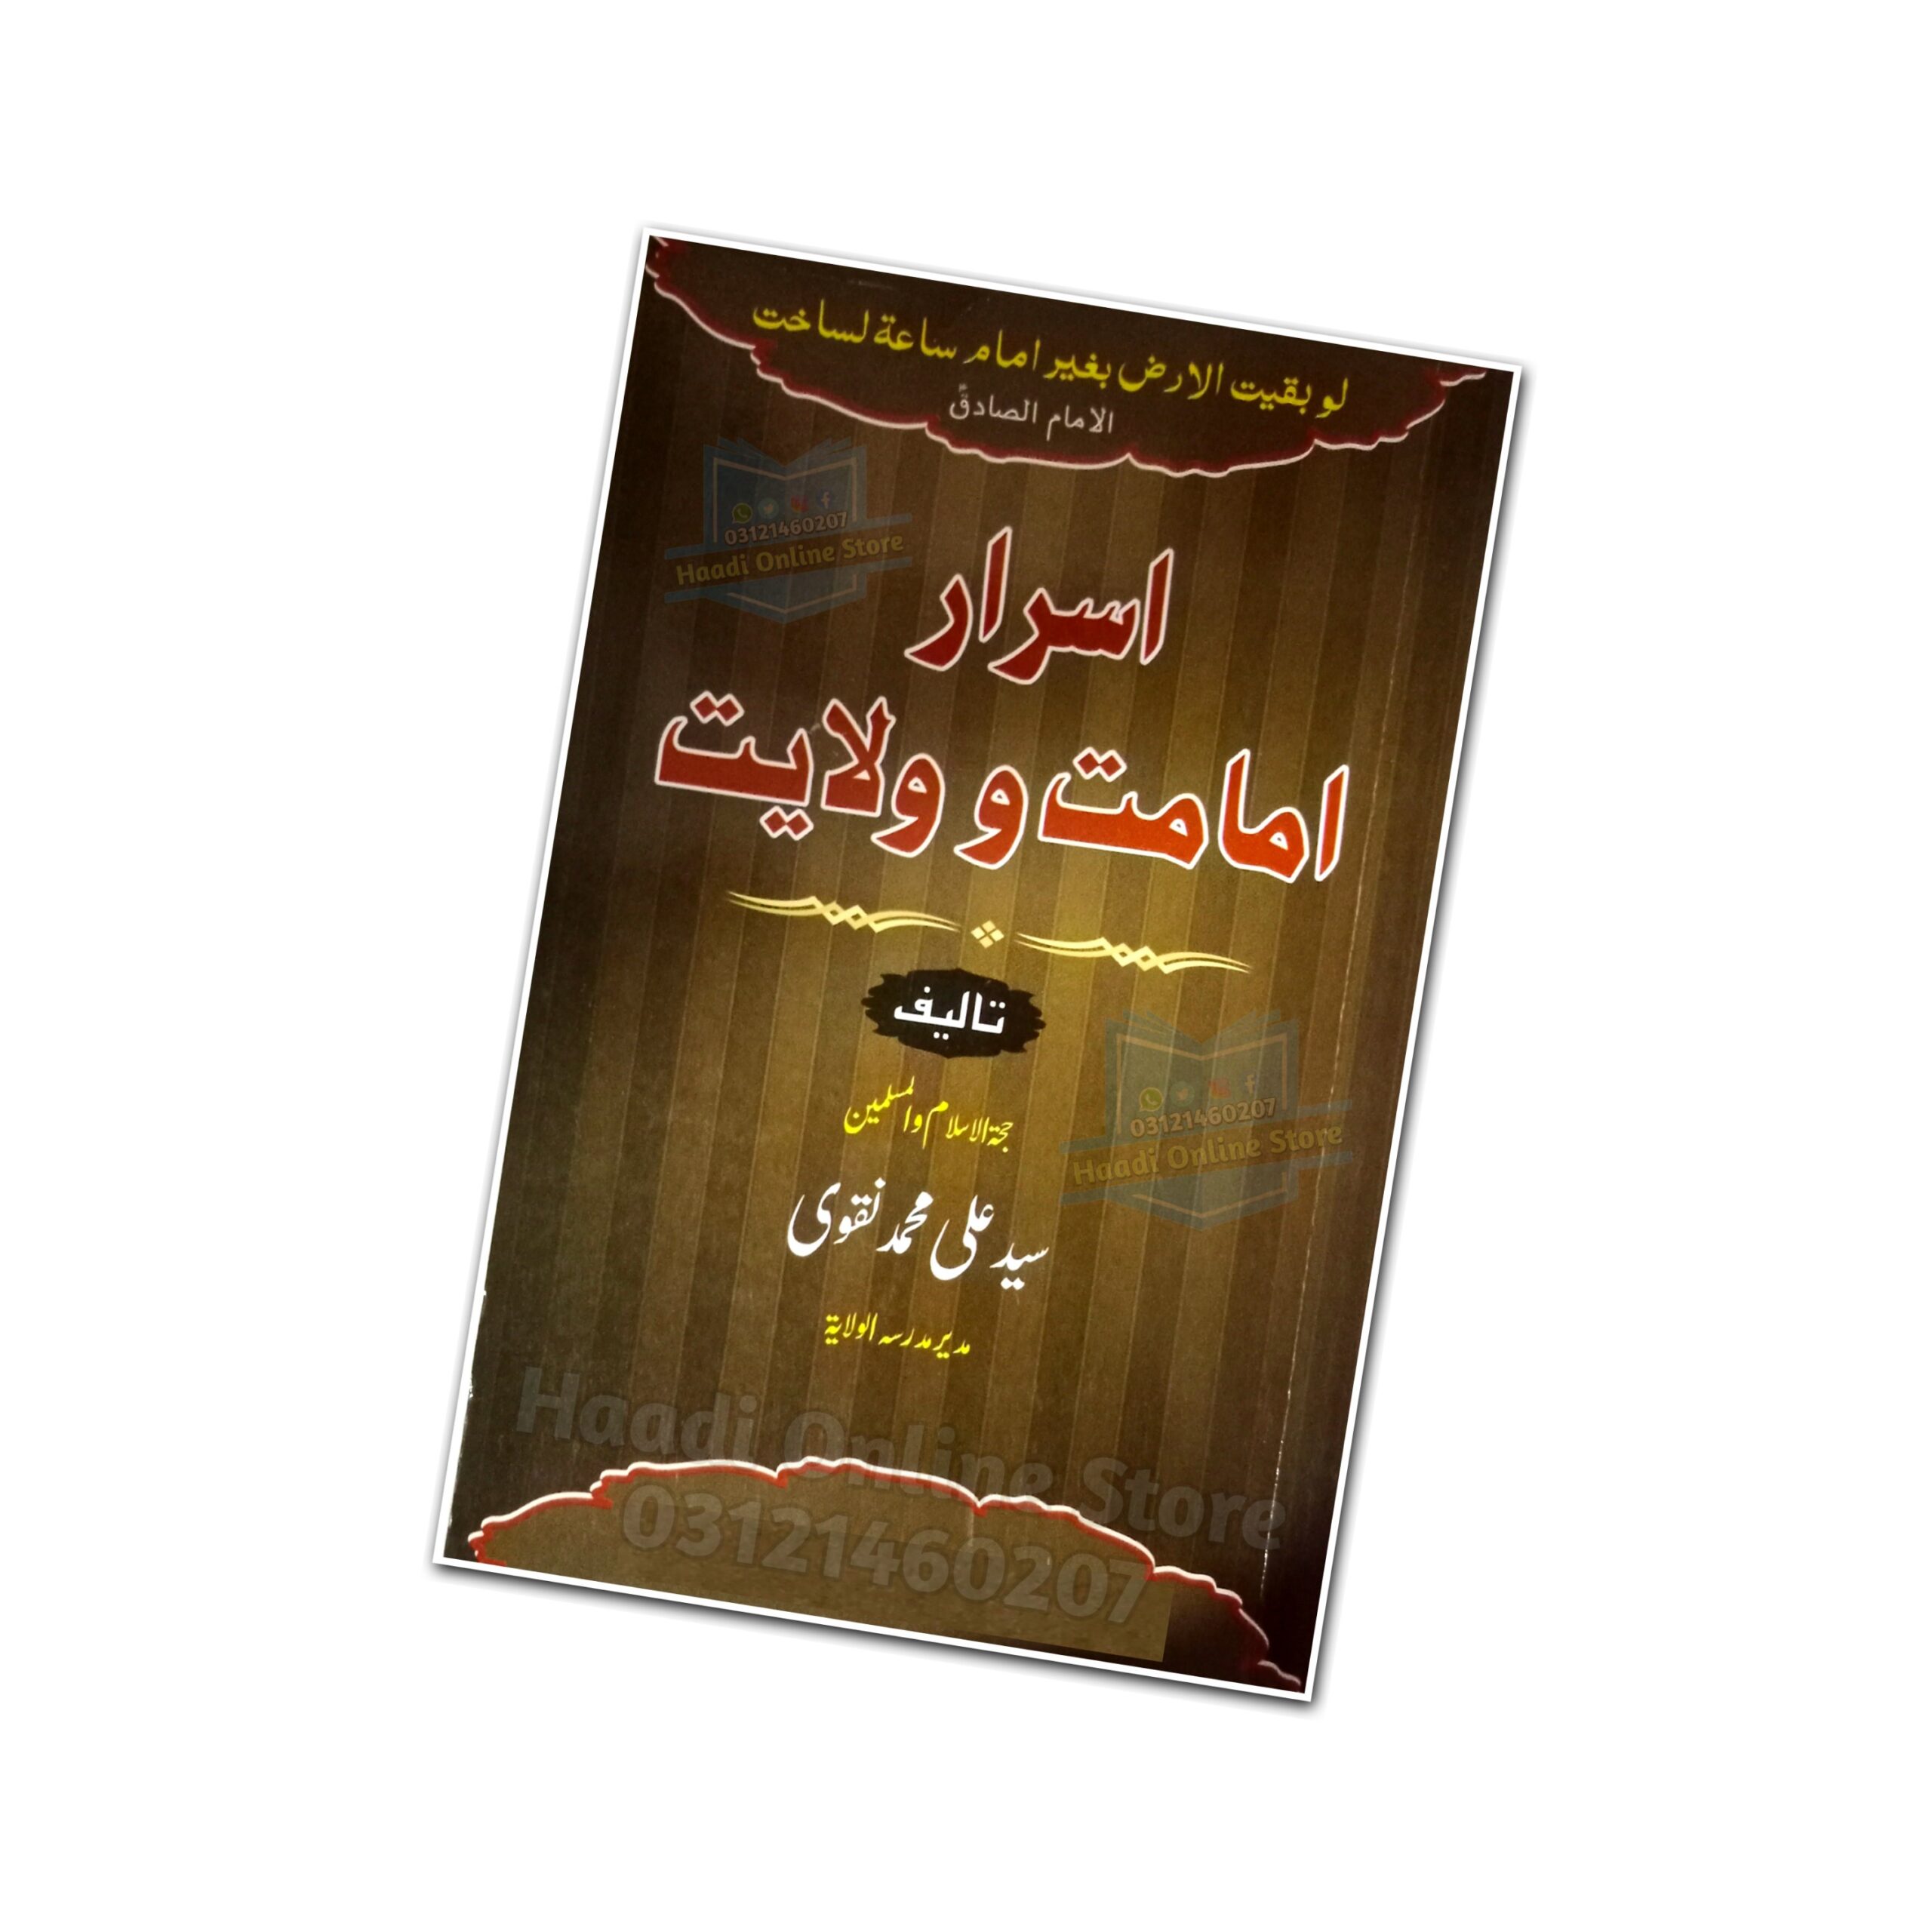 Israr e Imamat O Wilayat | Ø§Ø³Ø±Ø§Ø±Ù� Ø§Ù…Ø§Ù…Øª Ùˆ ÙˆÙ„Ø§ÛŒØª | Best Book | Haadi Online Store